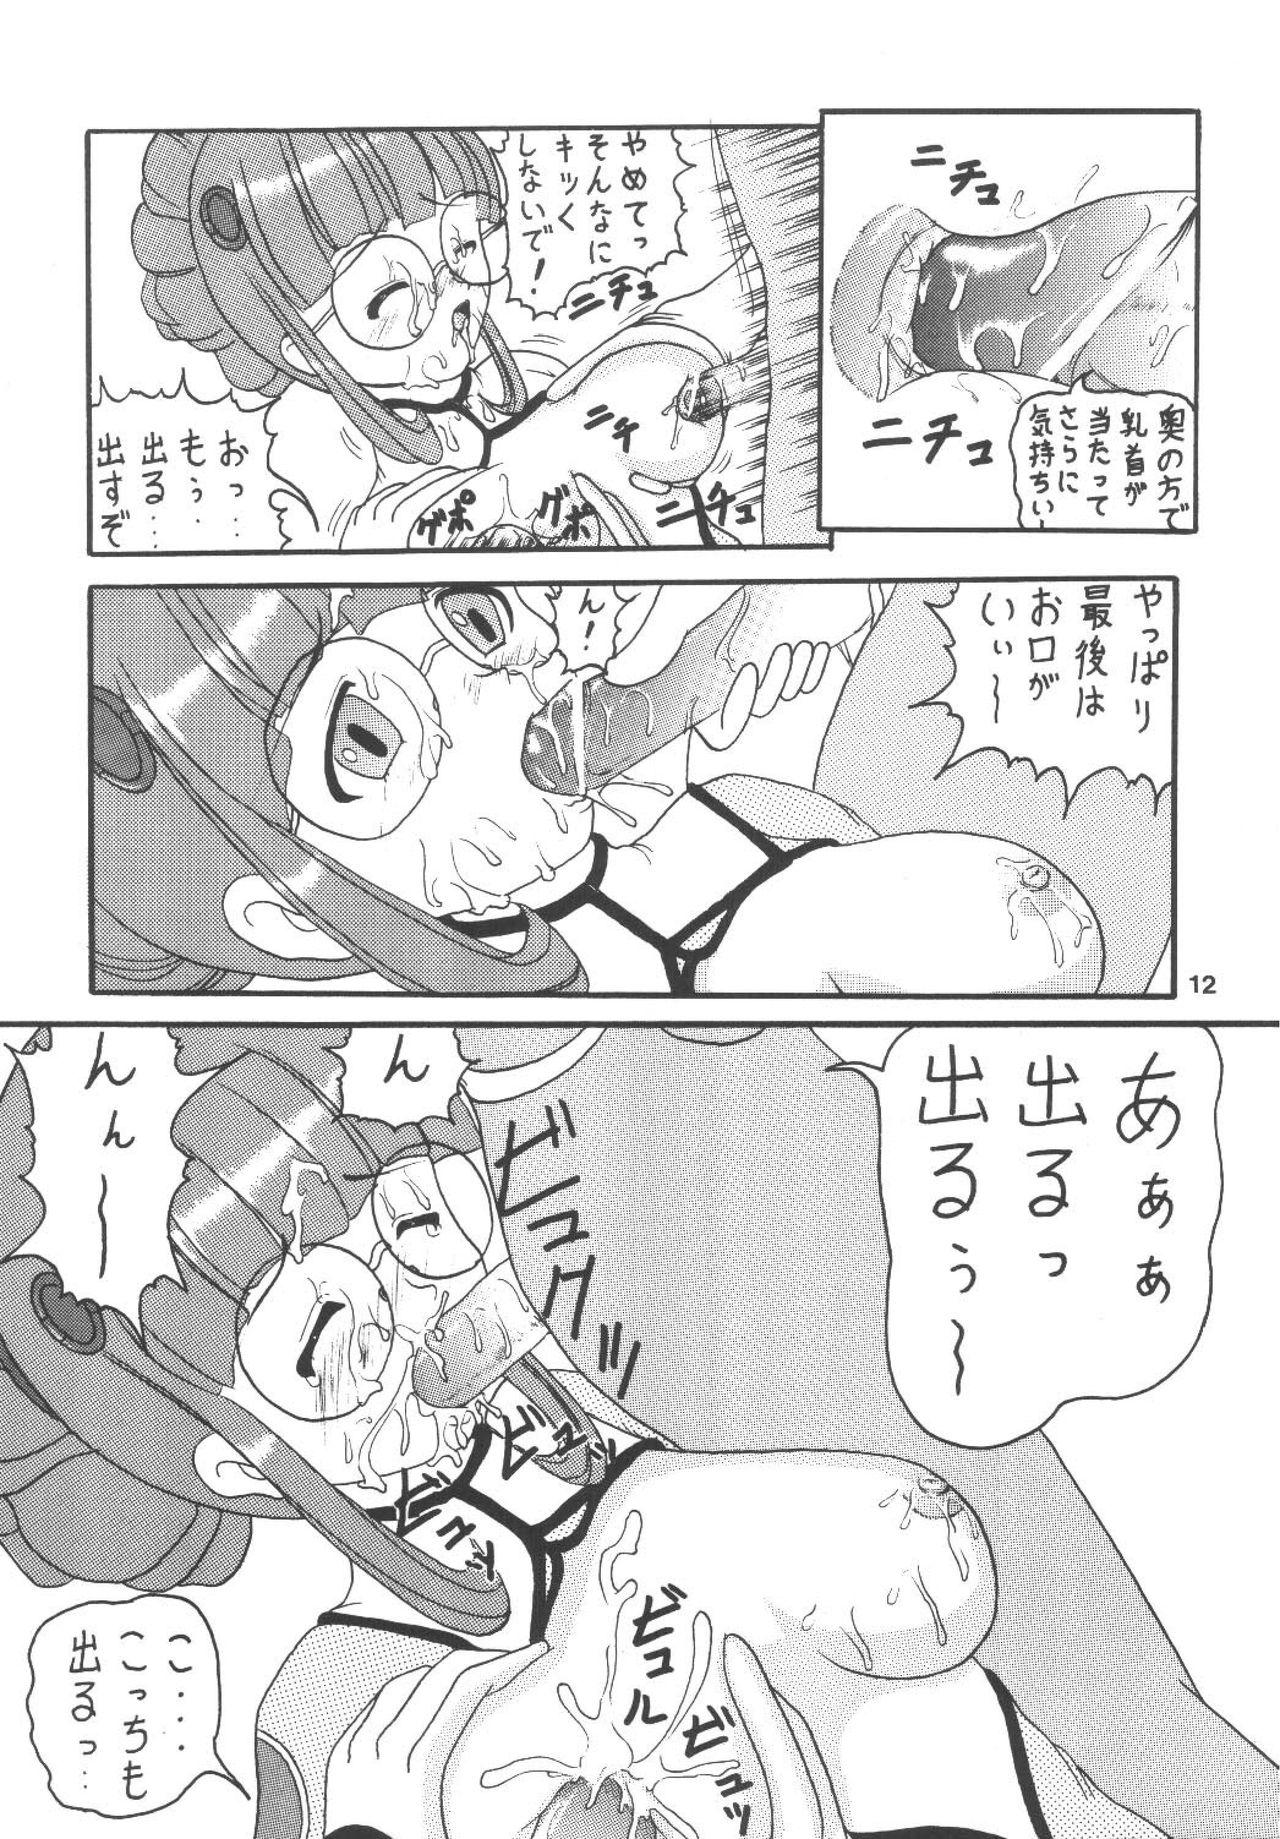 Rola Uchuu de Karasawagi - Gundam seed Uchuu no stellvia Perfect Body Porn - Page 13